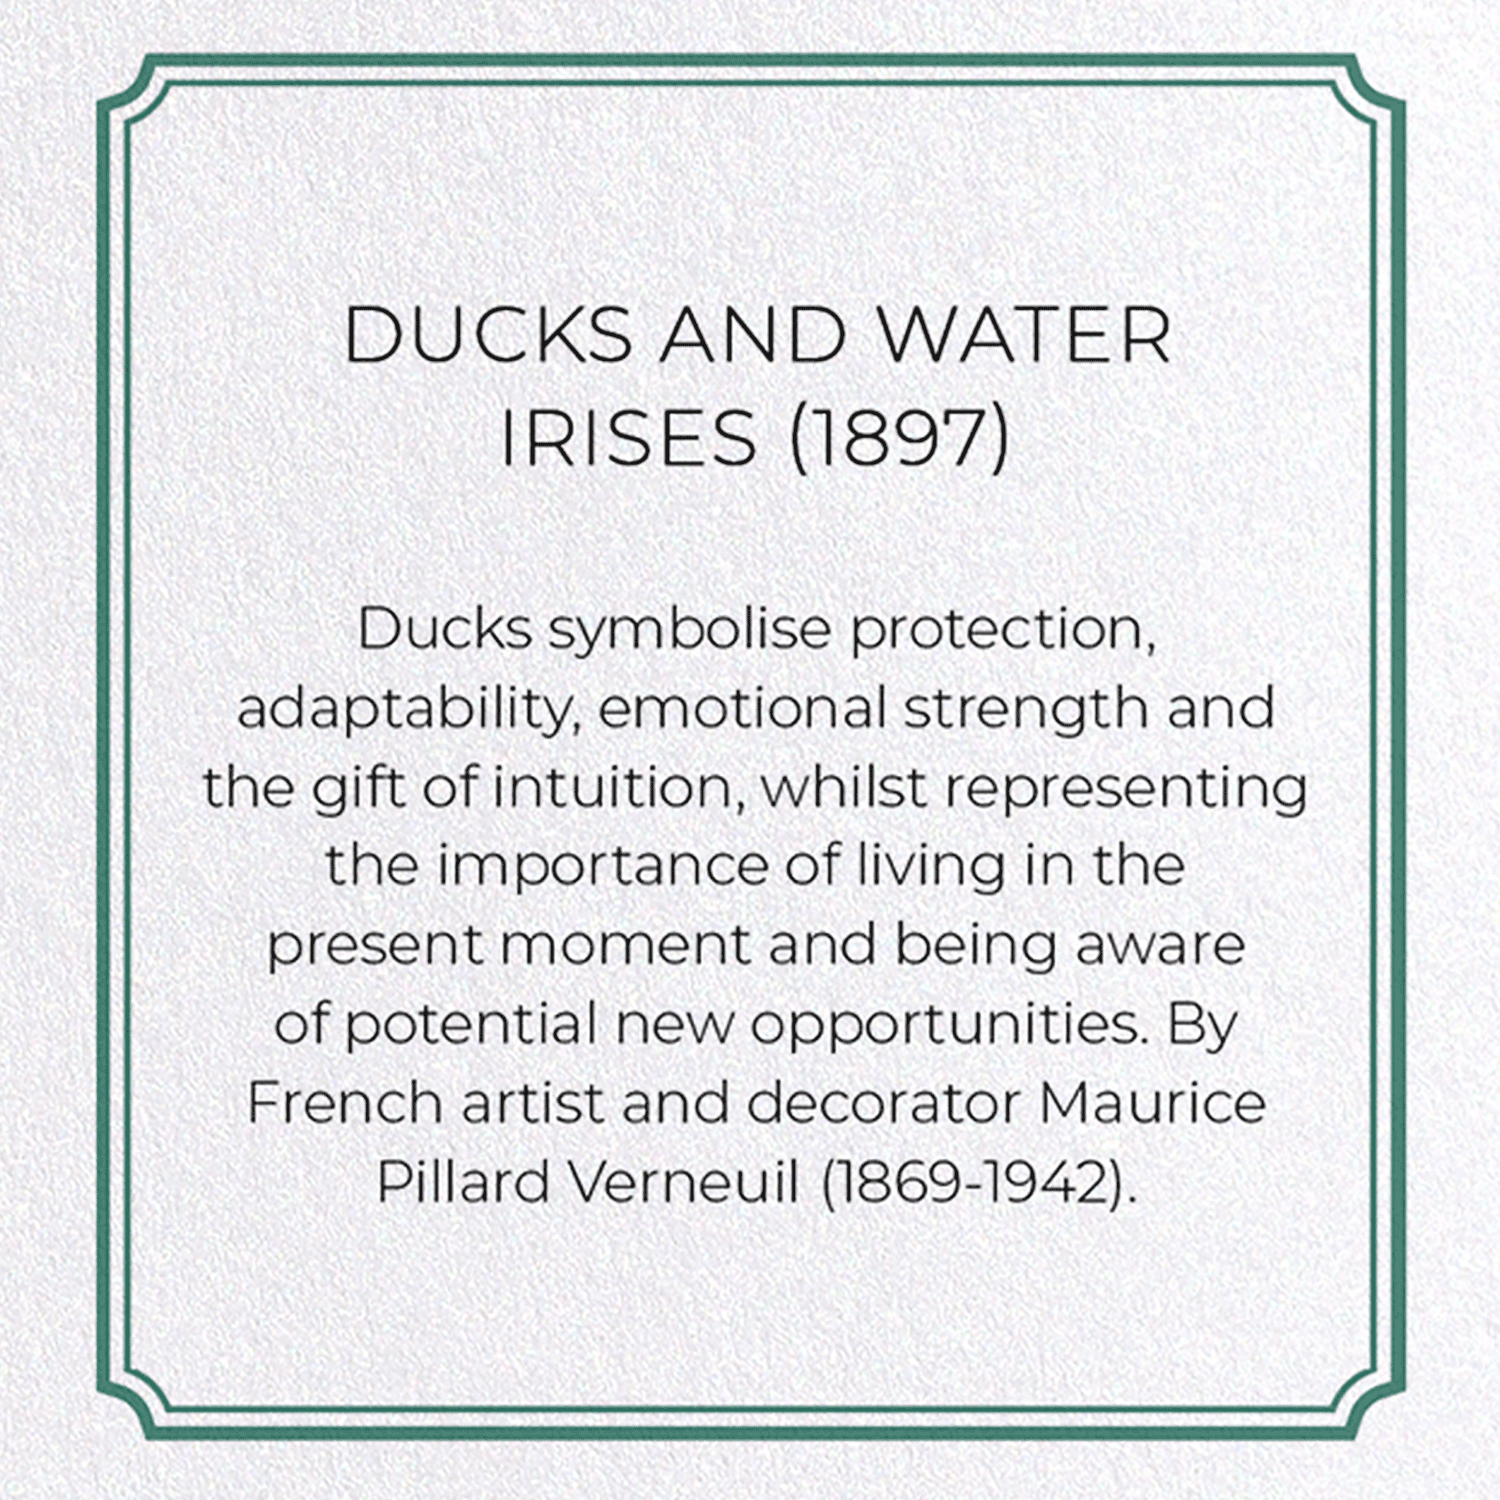 DUCKS AND WATER IRISES (1897)